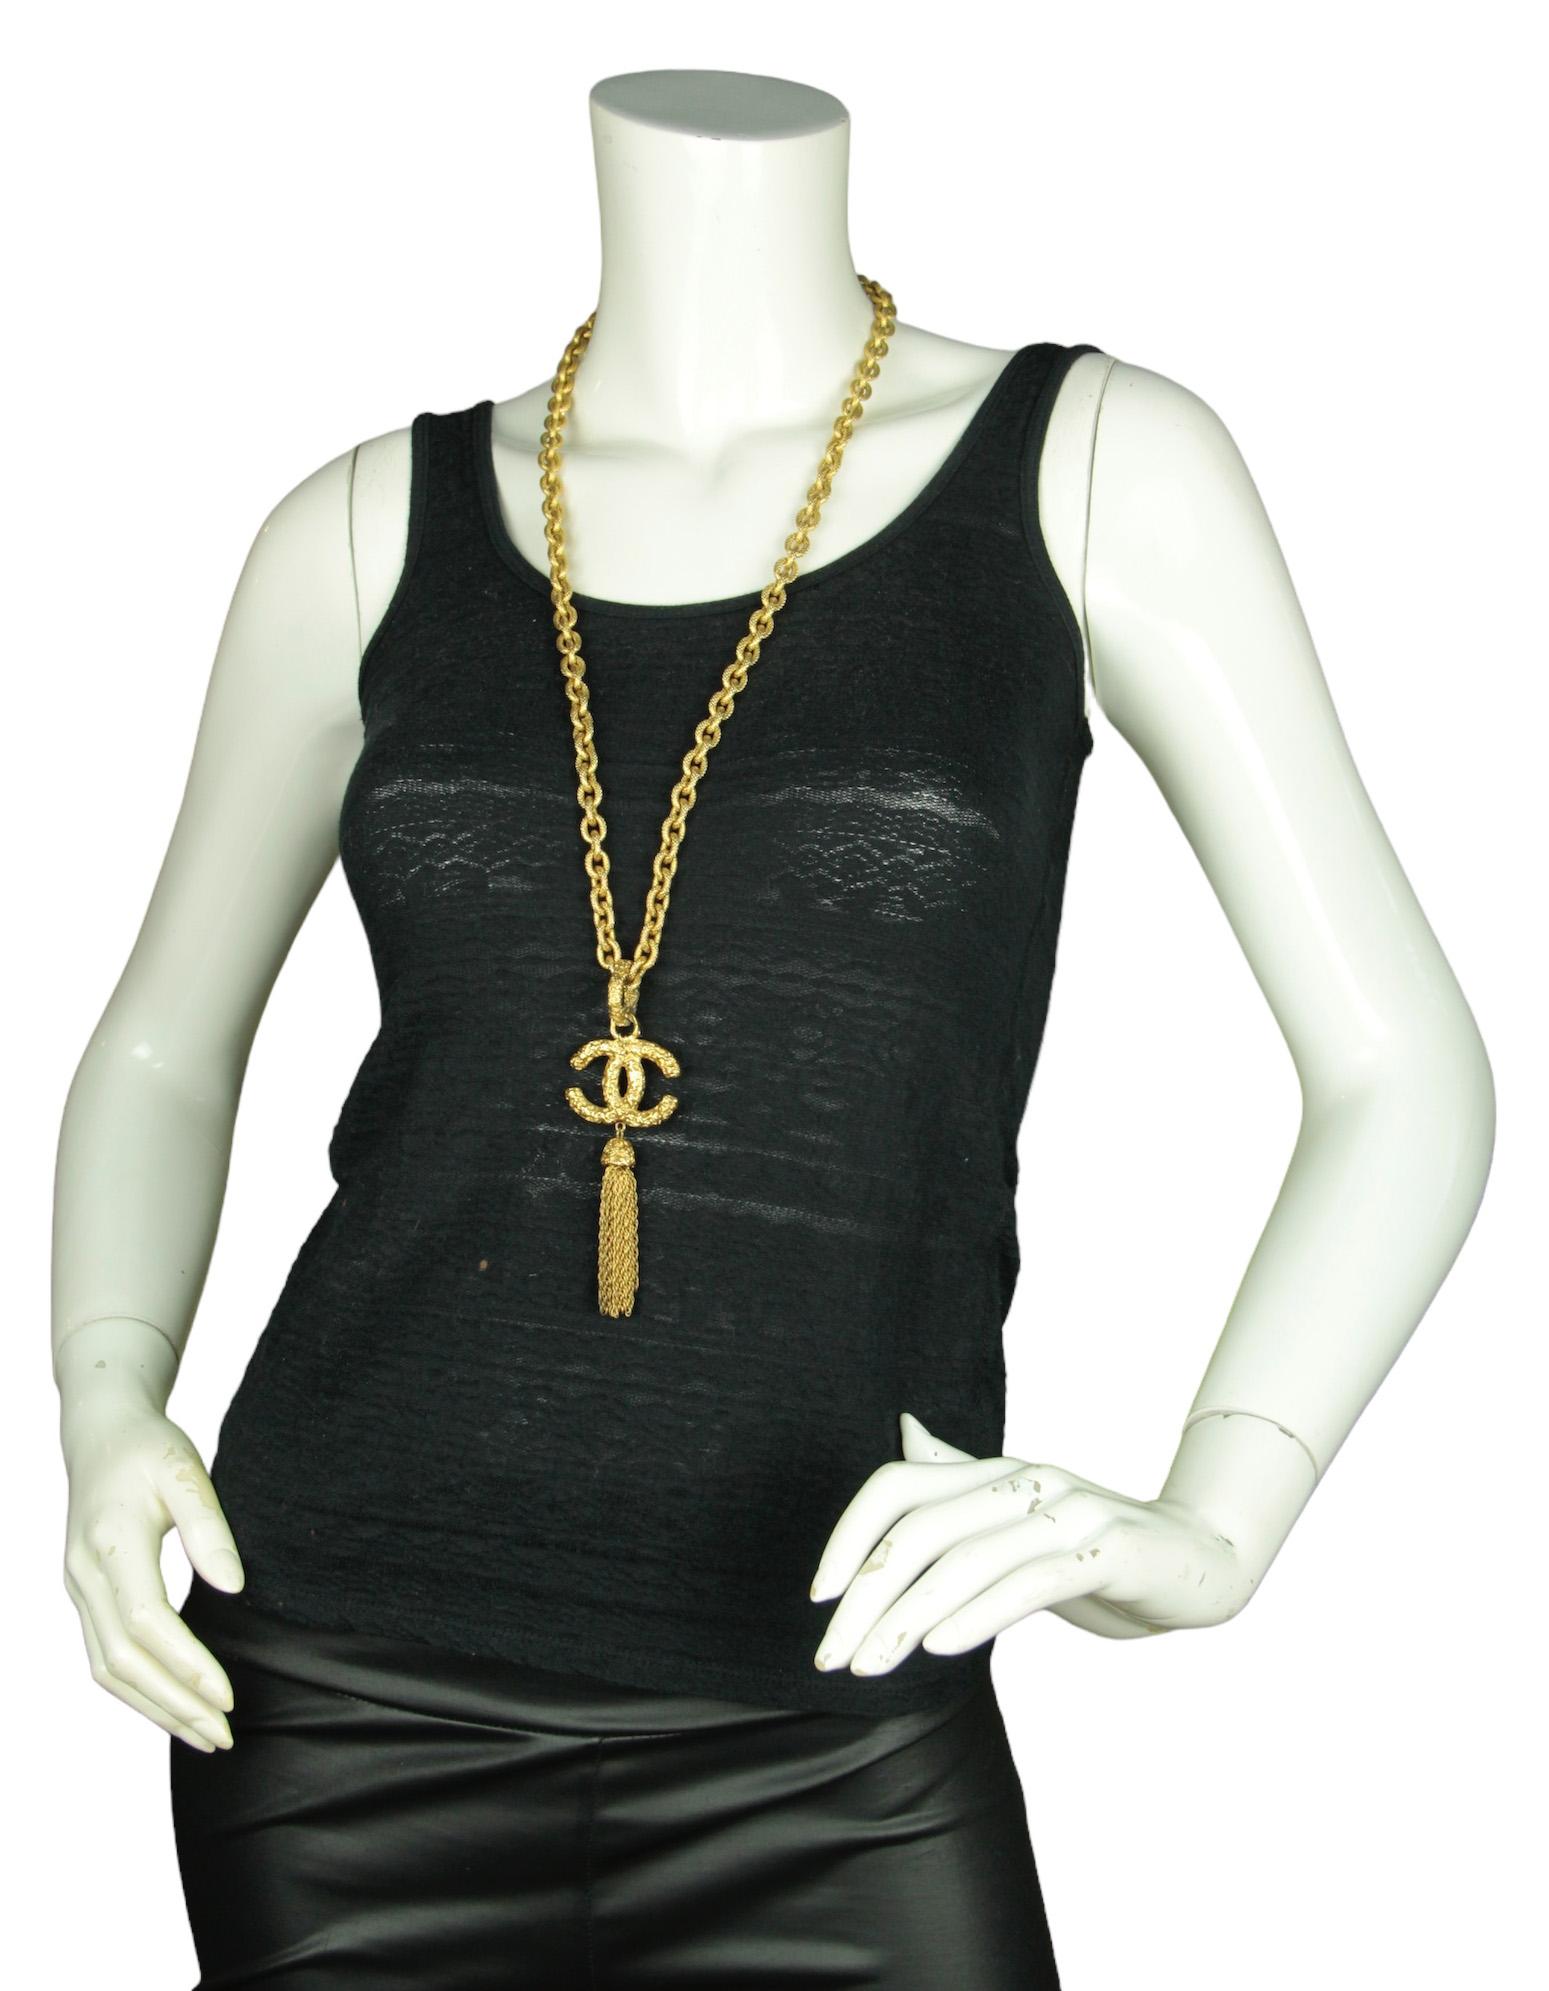 Chanel '90s Gold Vintage Textured CC Tassel Halskette 

Hergestellt in: Frankreich
Jahr der Herstellung: 1993
Farbe: Goldtone
MATERIALIEN: Metall
Punzierungen: CHANEL 93 A MADE IN FRANCE
Verschluss/Öffnung: Twistlock
Allgemeiner Zustand: